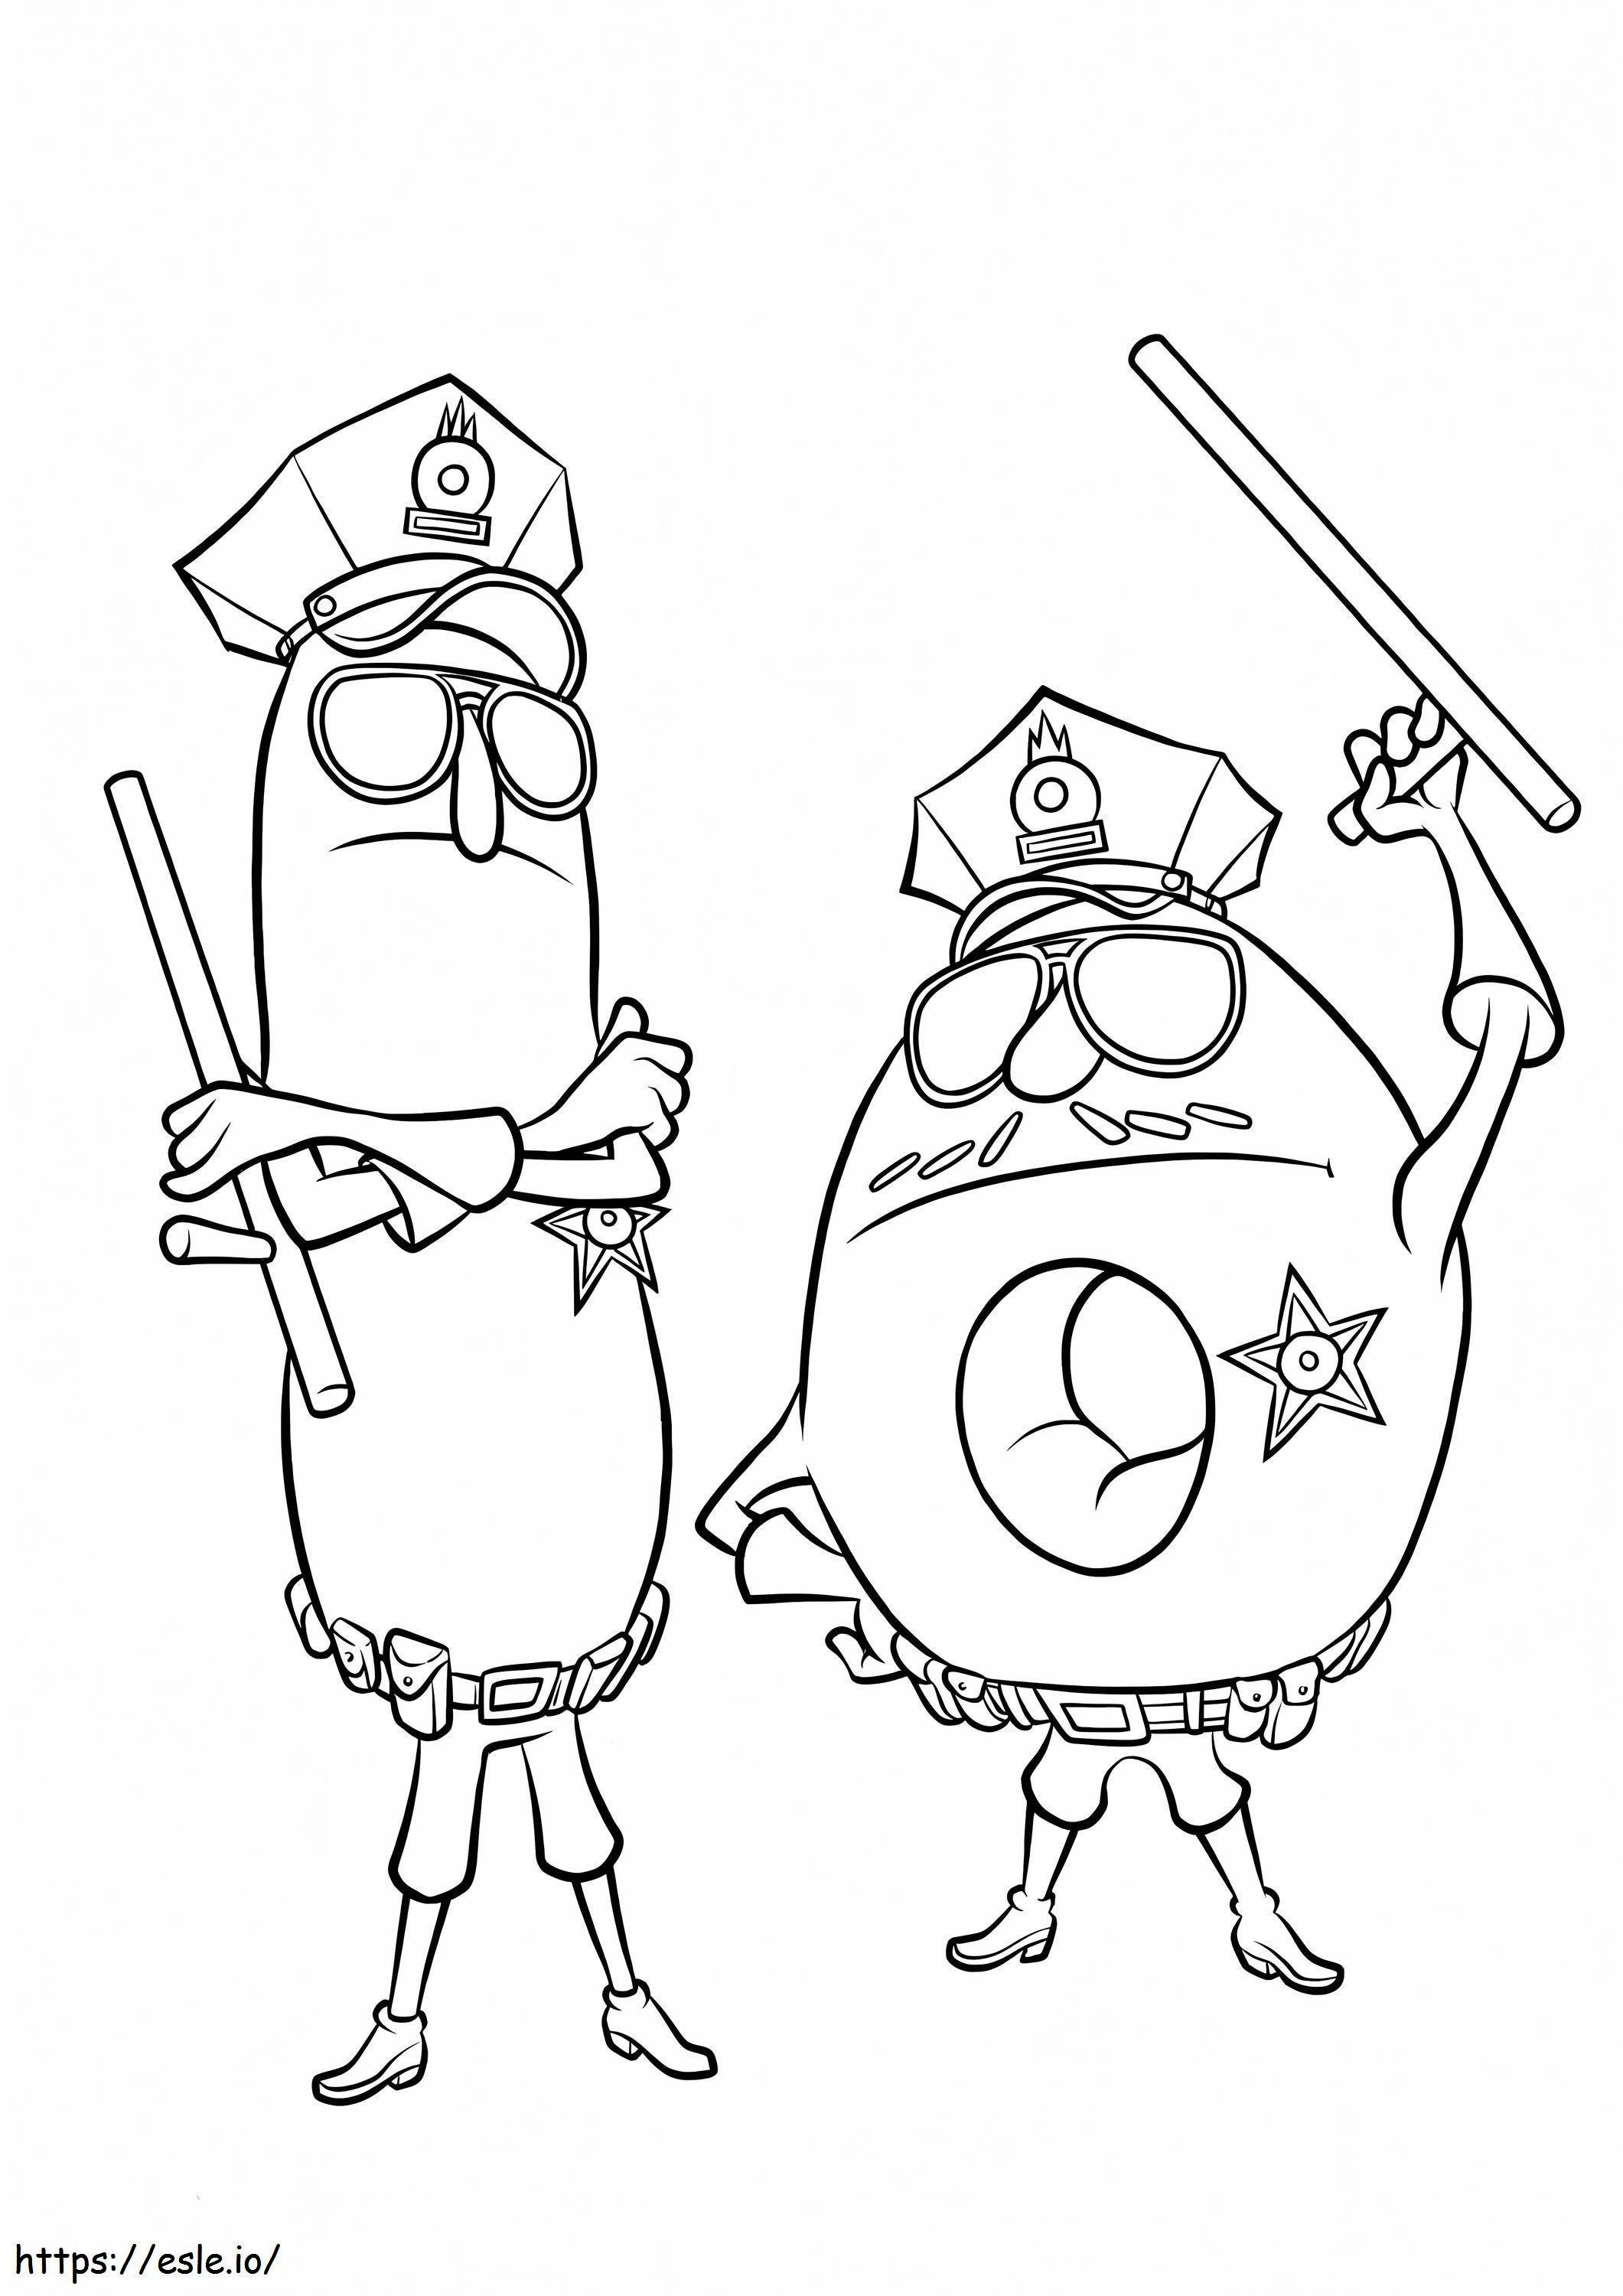 Donut e amigo de desenho animado para colorir